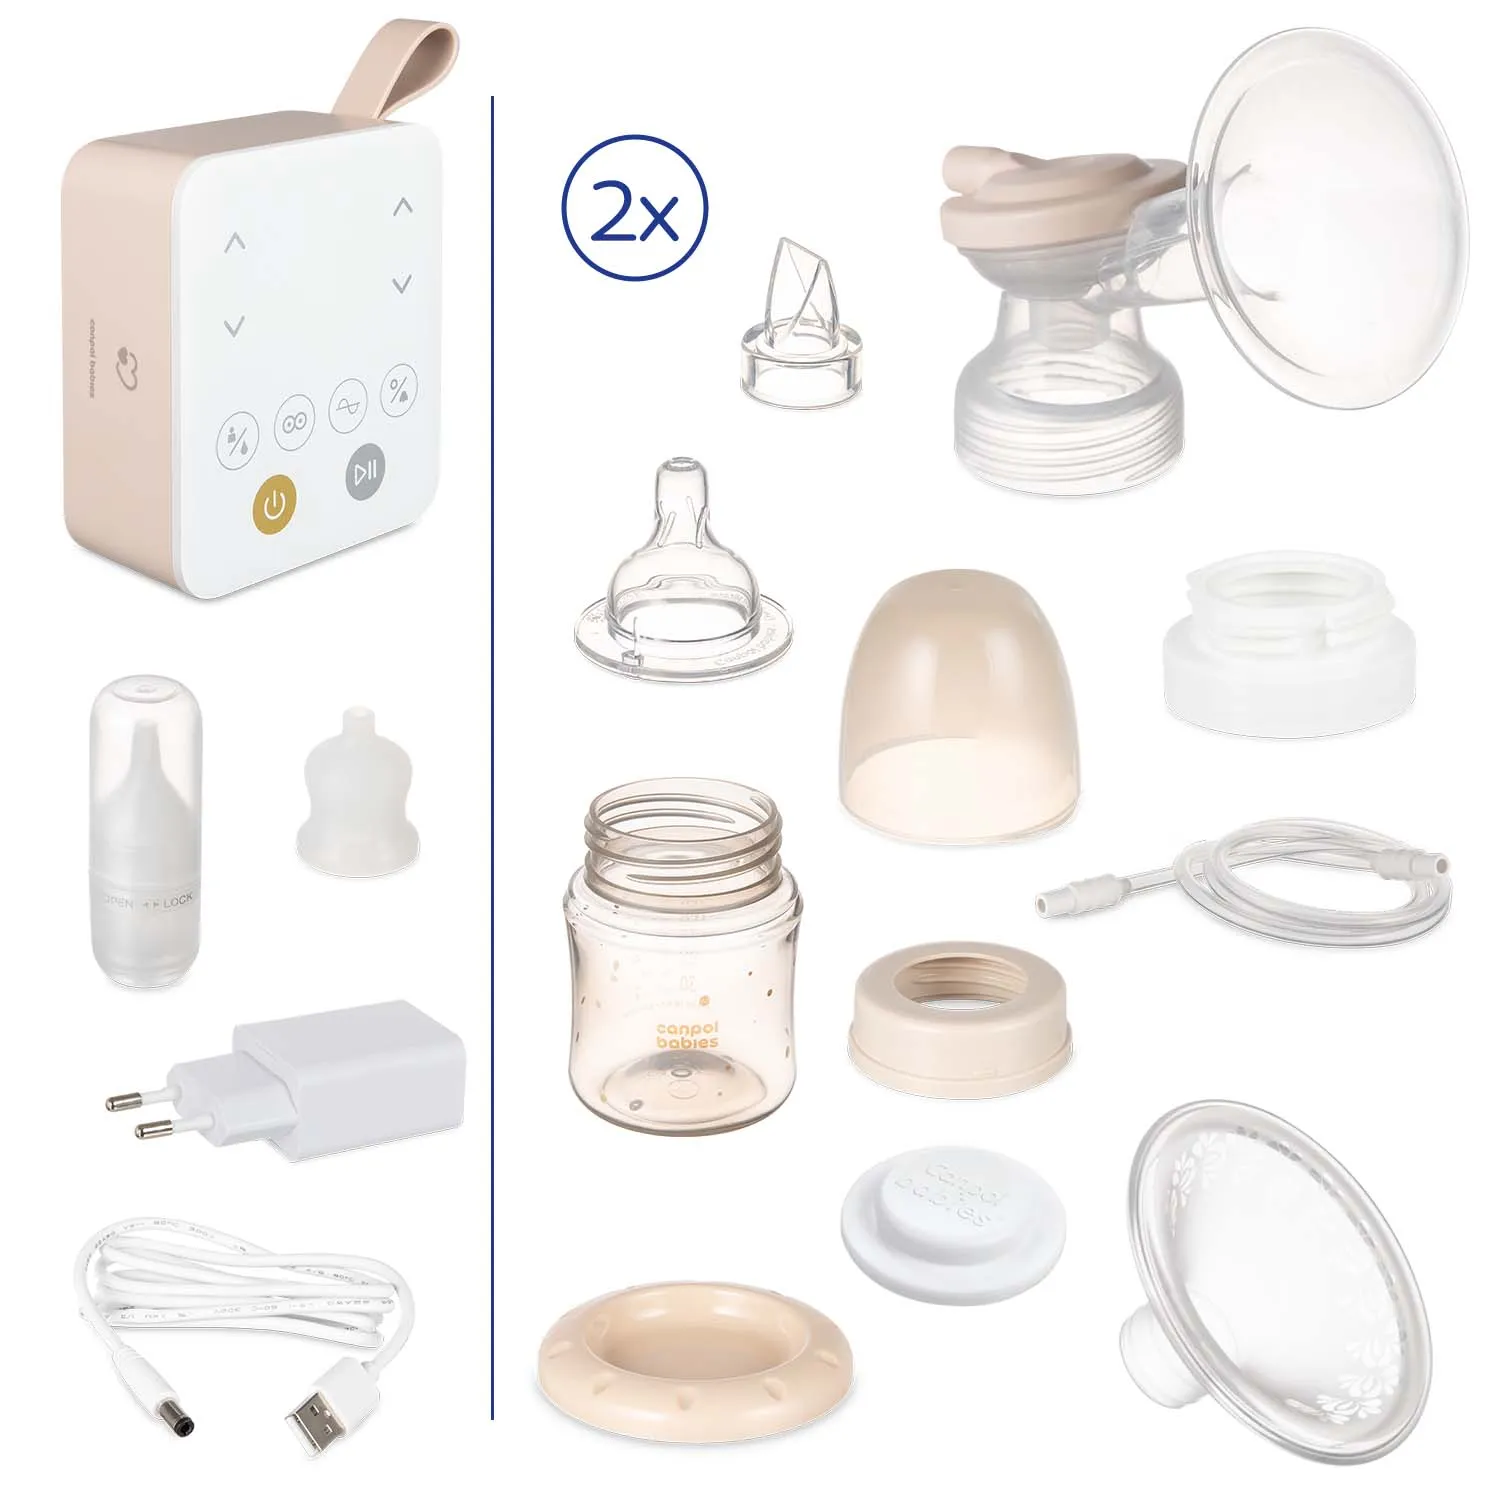 Canpol babies Dvojitá elektrická odsávačka materského mlieka 2v1 1×1 ks, odsávačka mlieka s nosnou odsávačkou ExpressCare